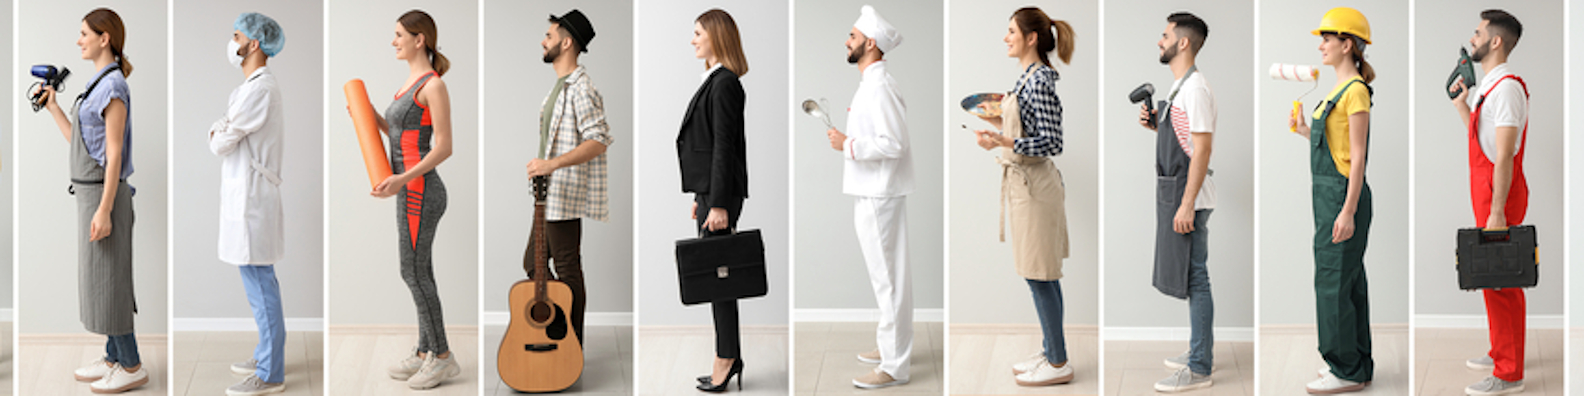 Foto: Reihe von Personen, die unterschiedliche Berufsuniformen tragen